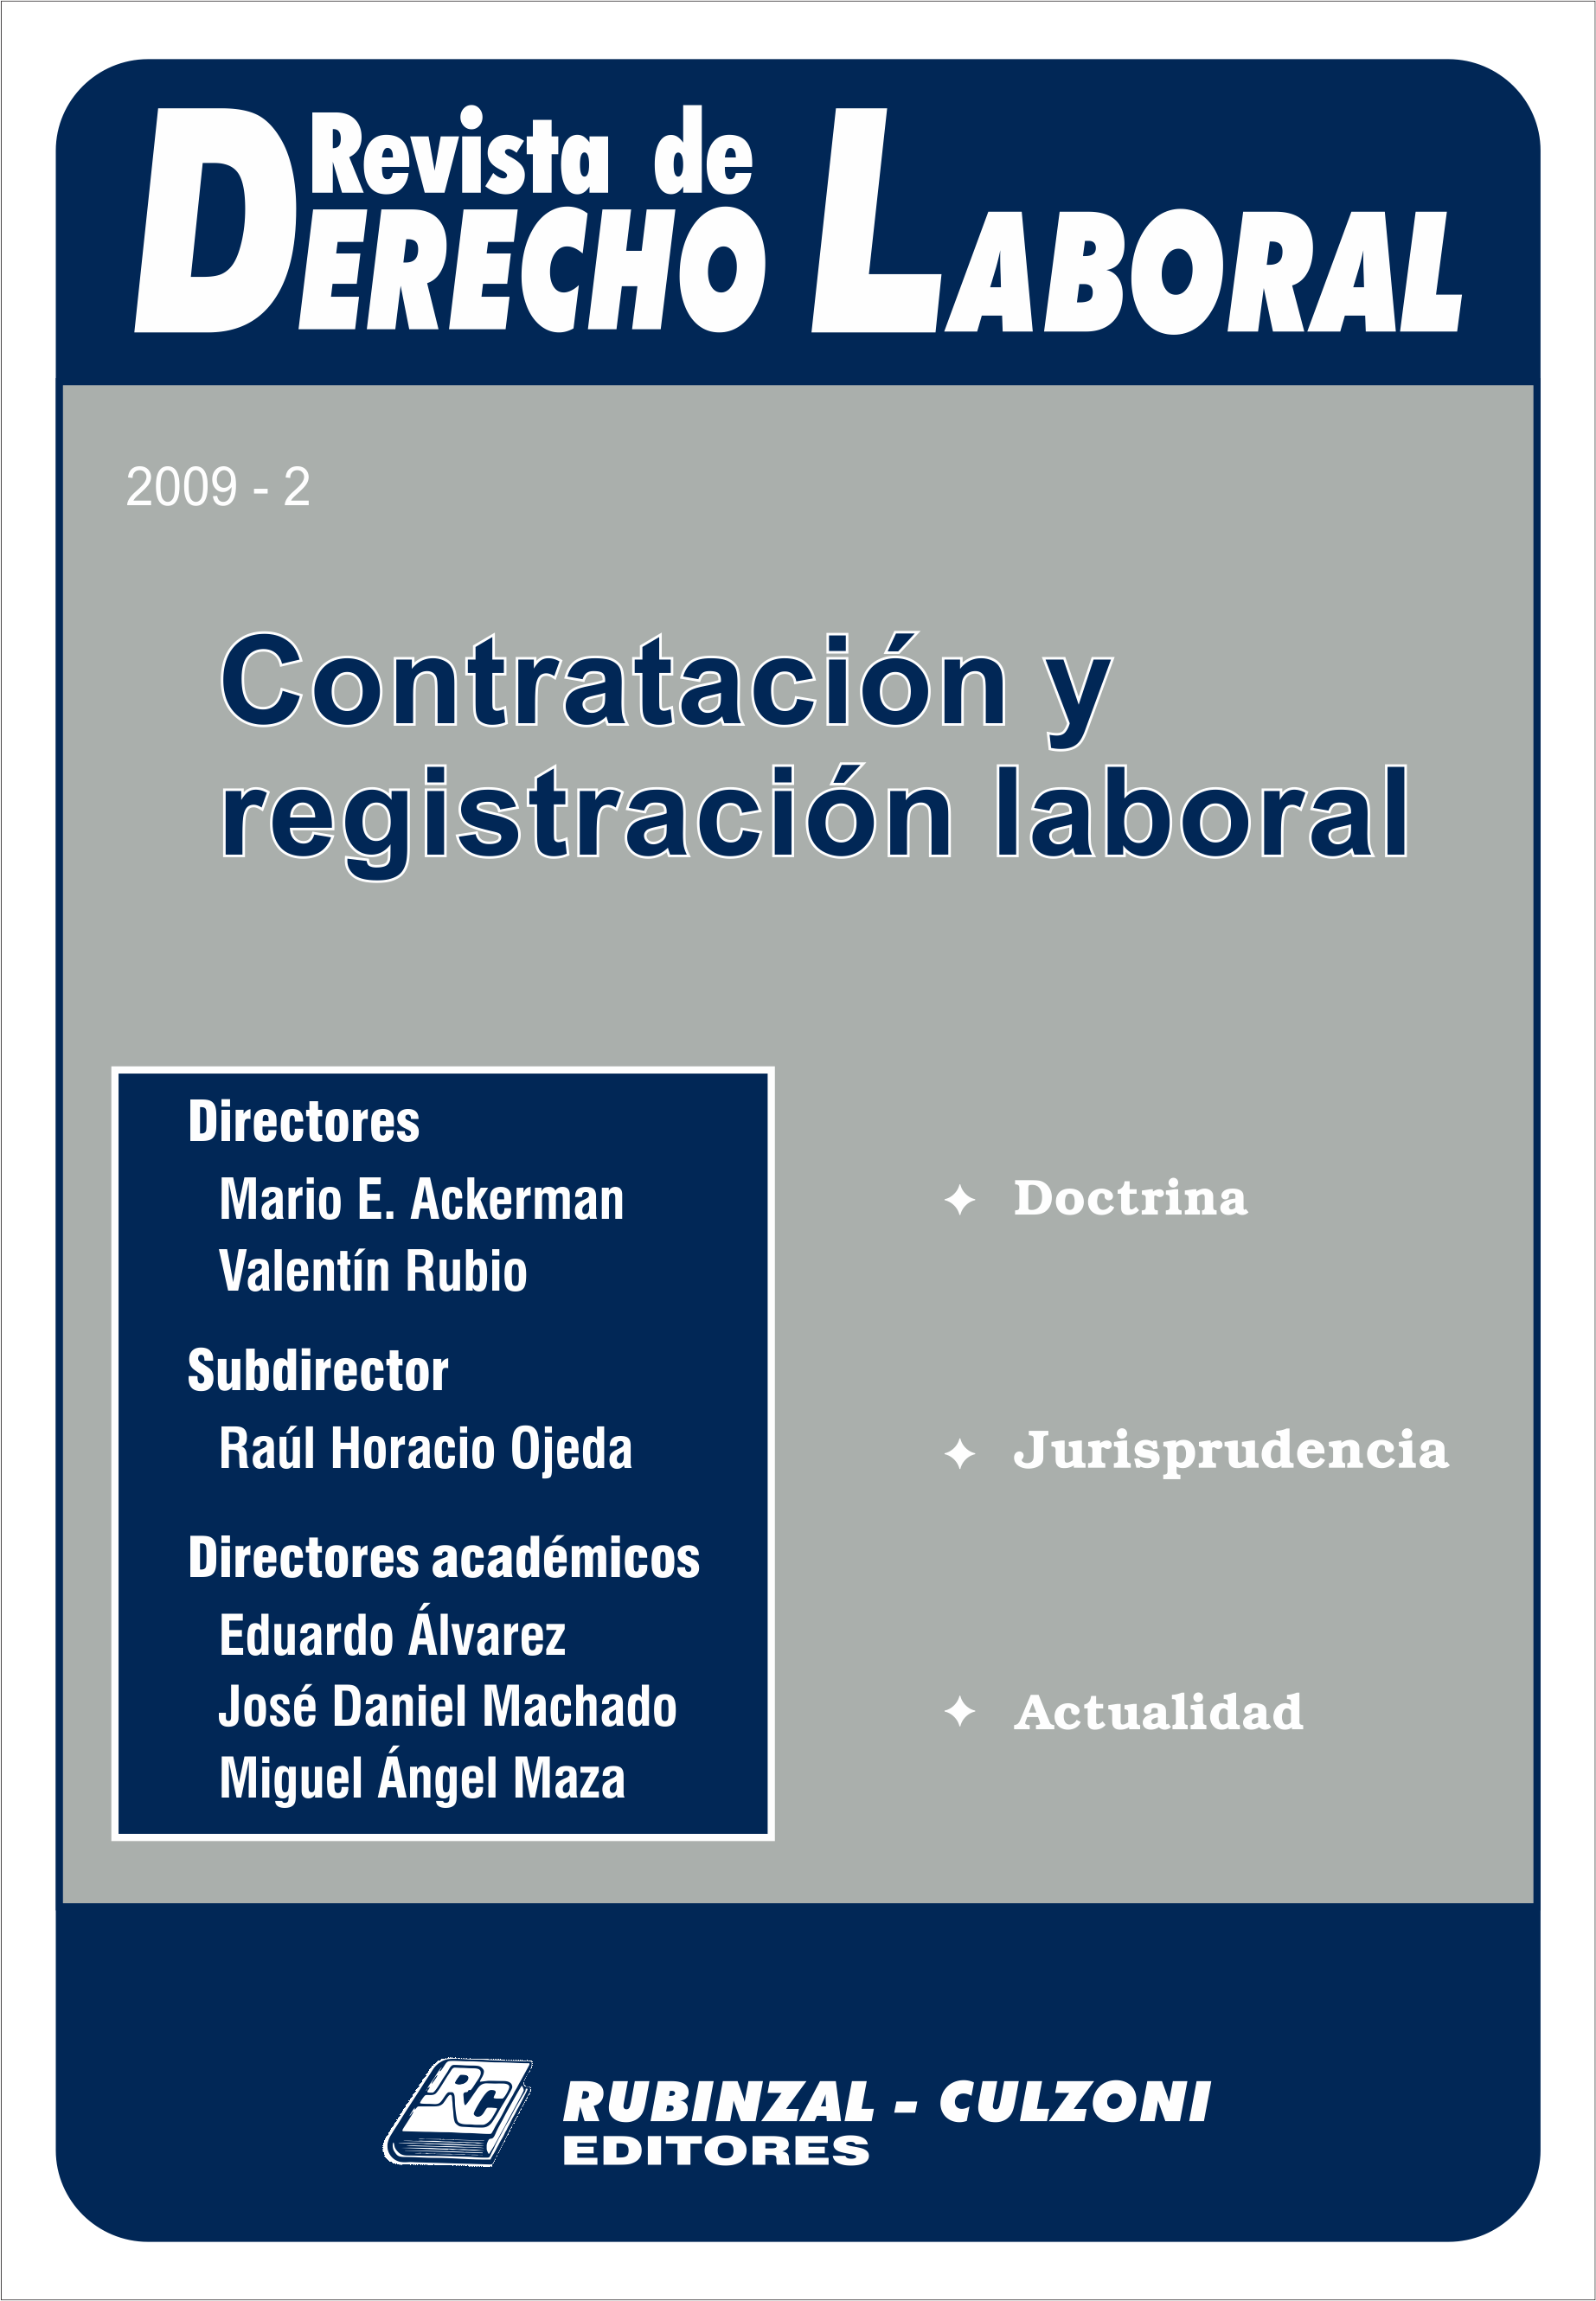 Revista de Derecho Laboral - Contratación y registración laboral.